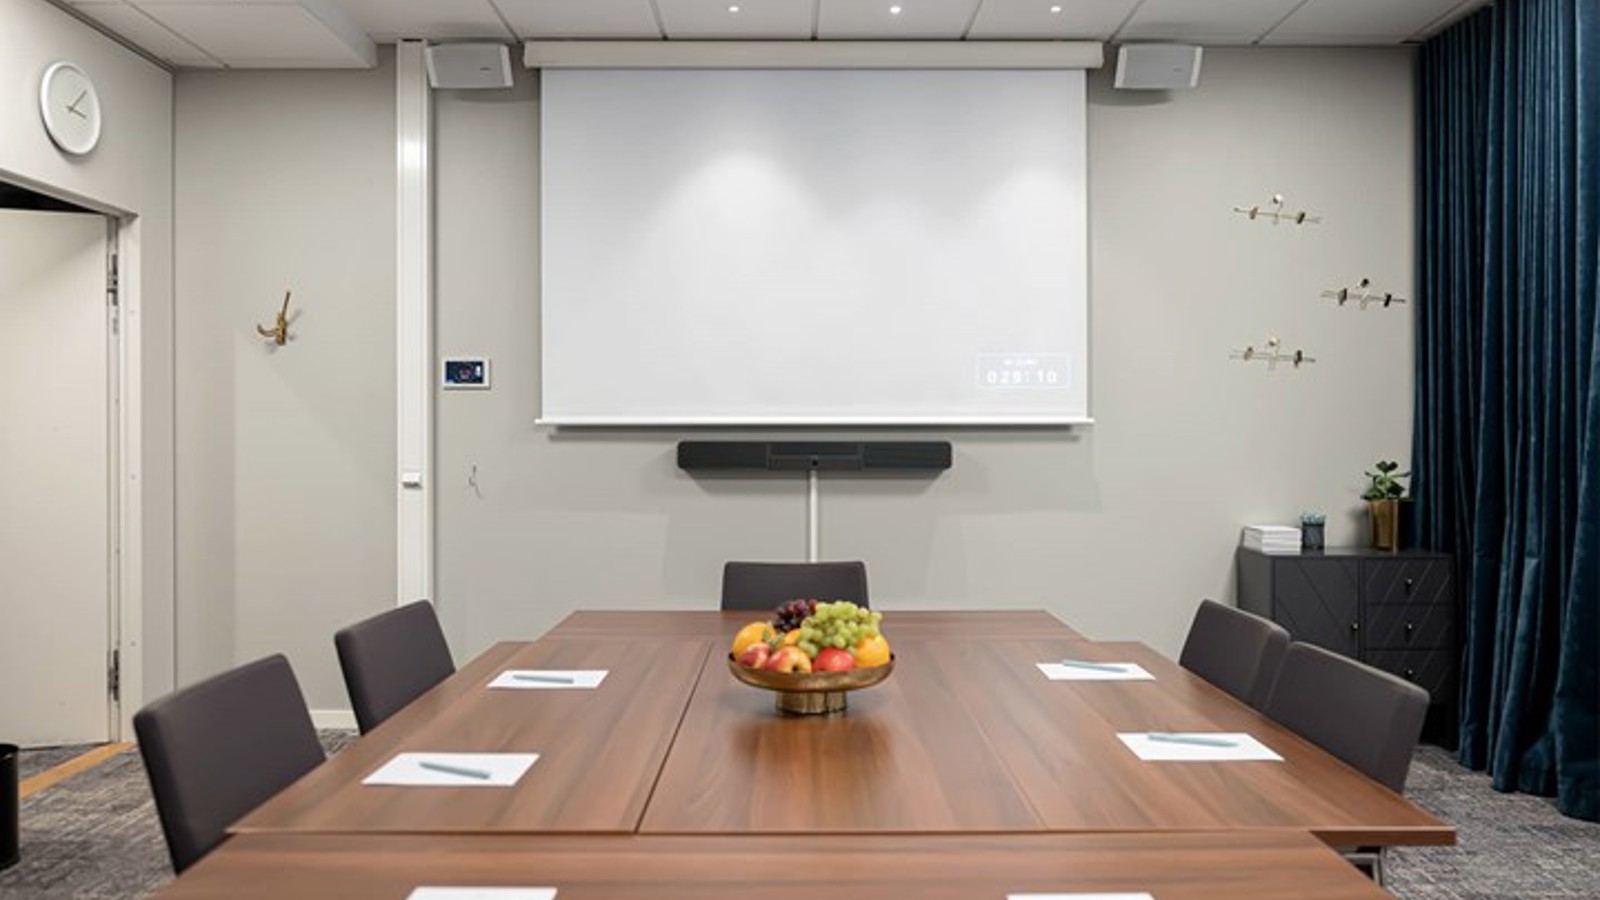 Konferensrum med brunt bord, grå stolar, ljusa väggar och projektor